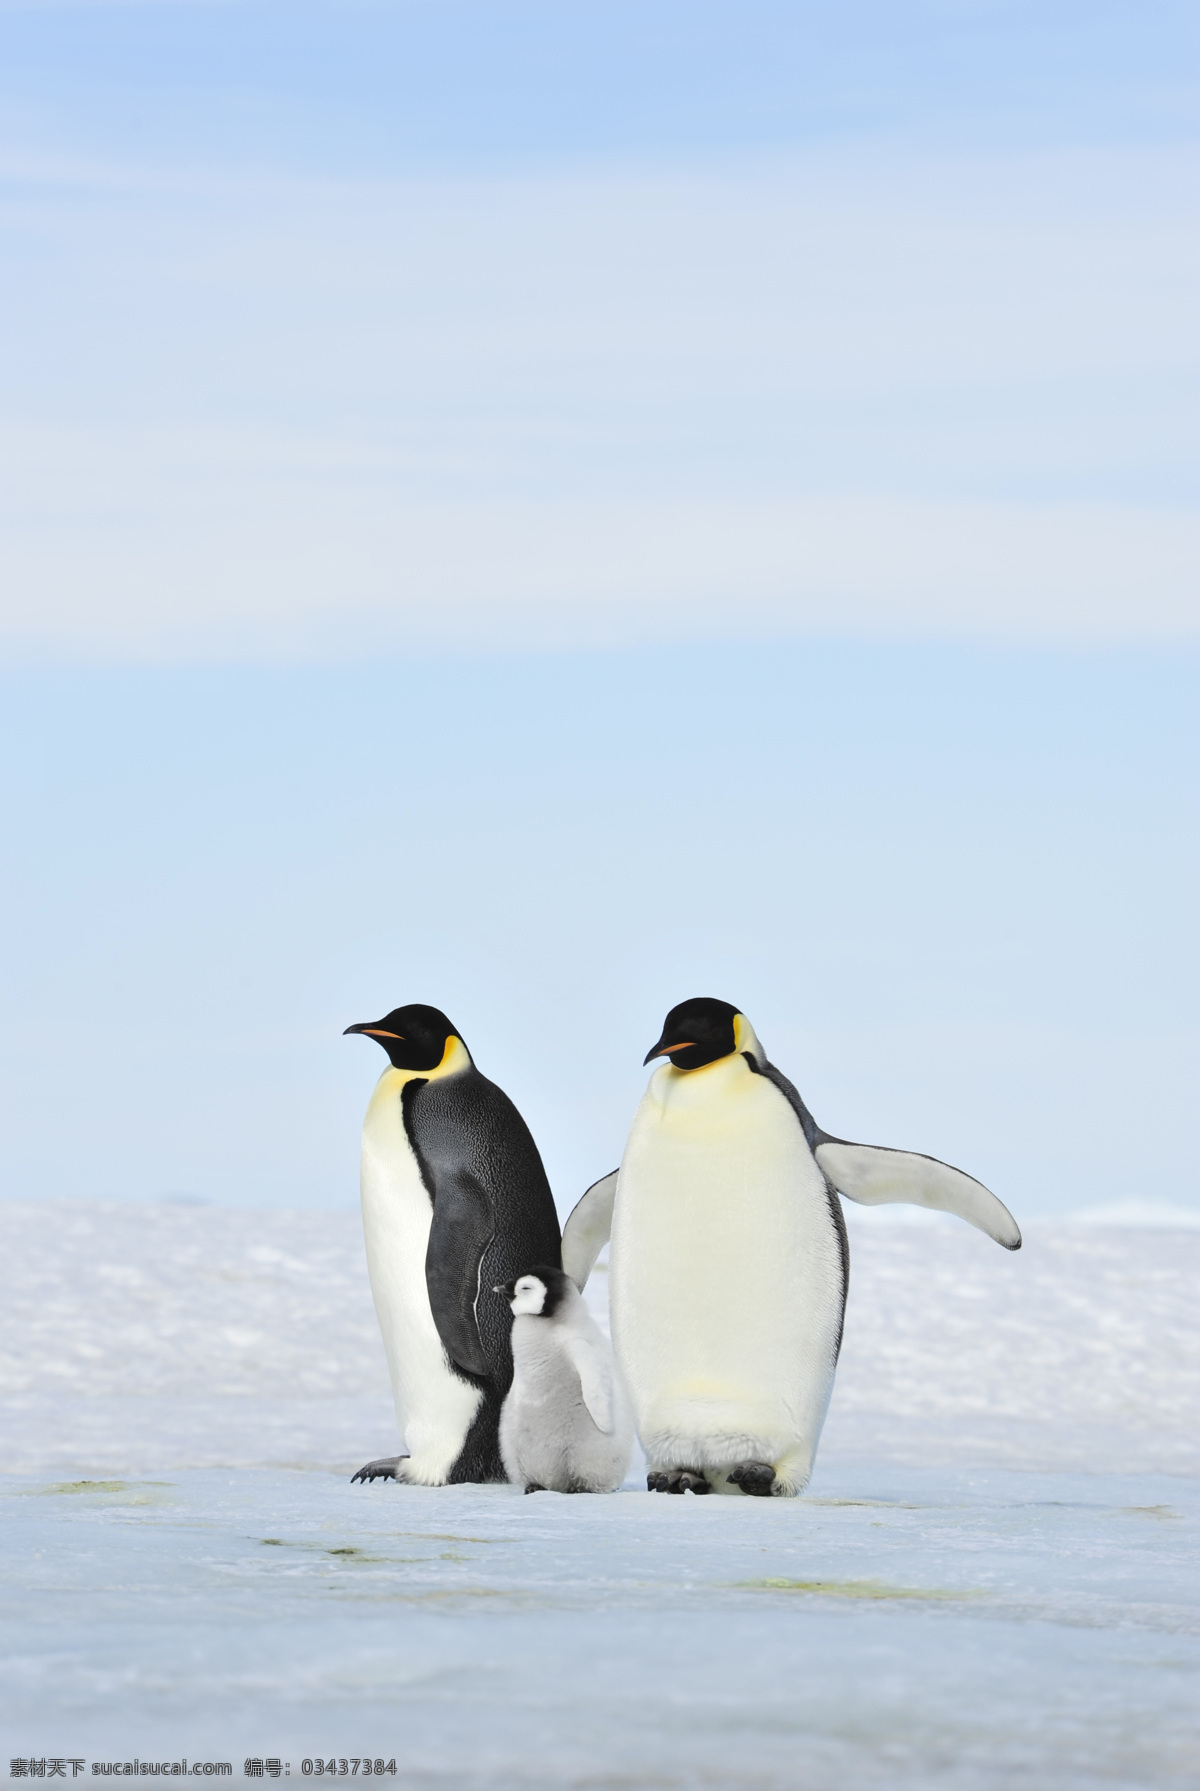 可爱 企鹅 摄影图片 可爱的 南极 冰山 生物世界 海洋生物